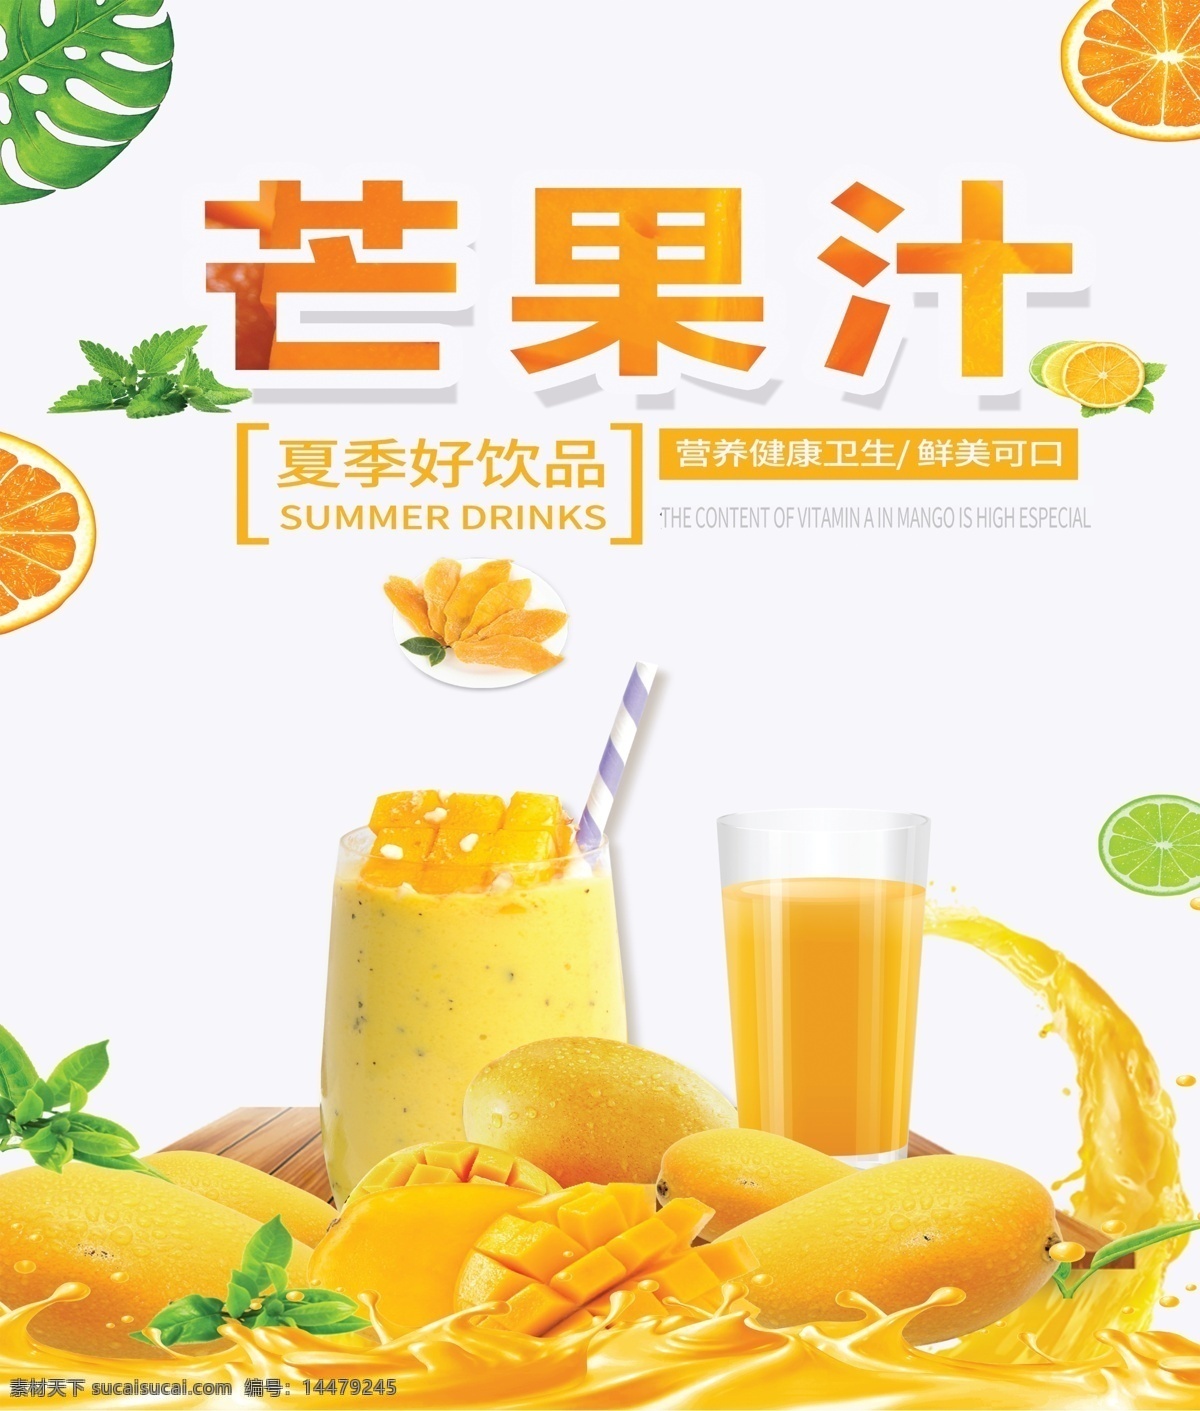 芒果汁1.5 X6瓶 - 果汁系列-产品中心 - 新乡市甜太阳绿色饮品有限公司